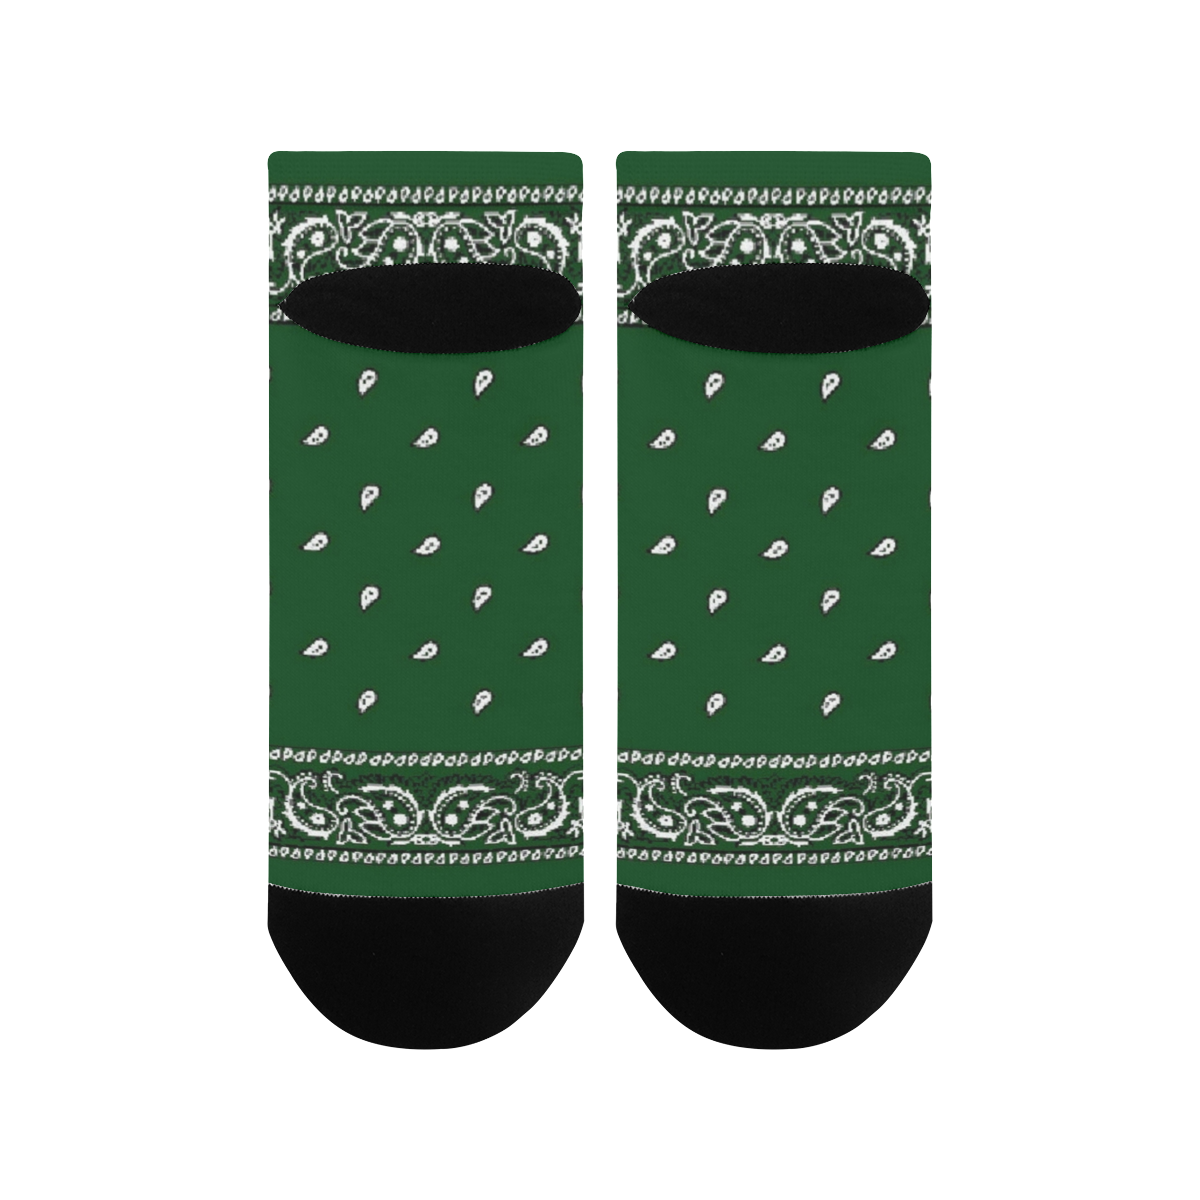 KERCHIEF PATTERN GREEN Women's Ankle Socks